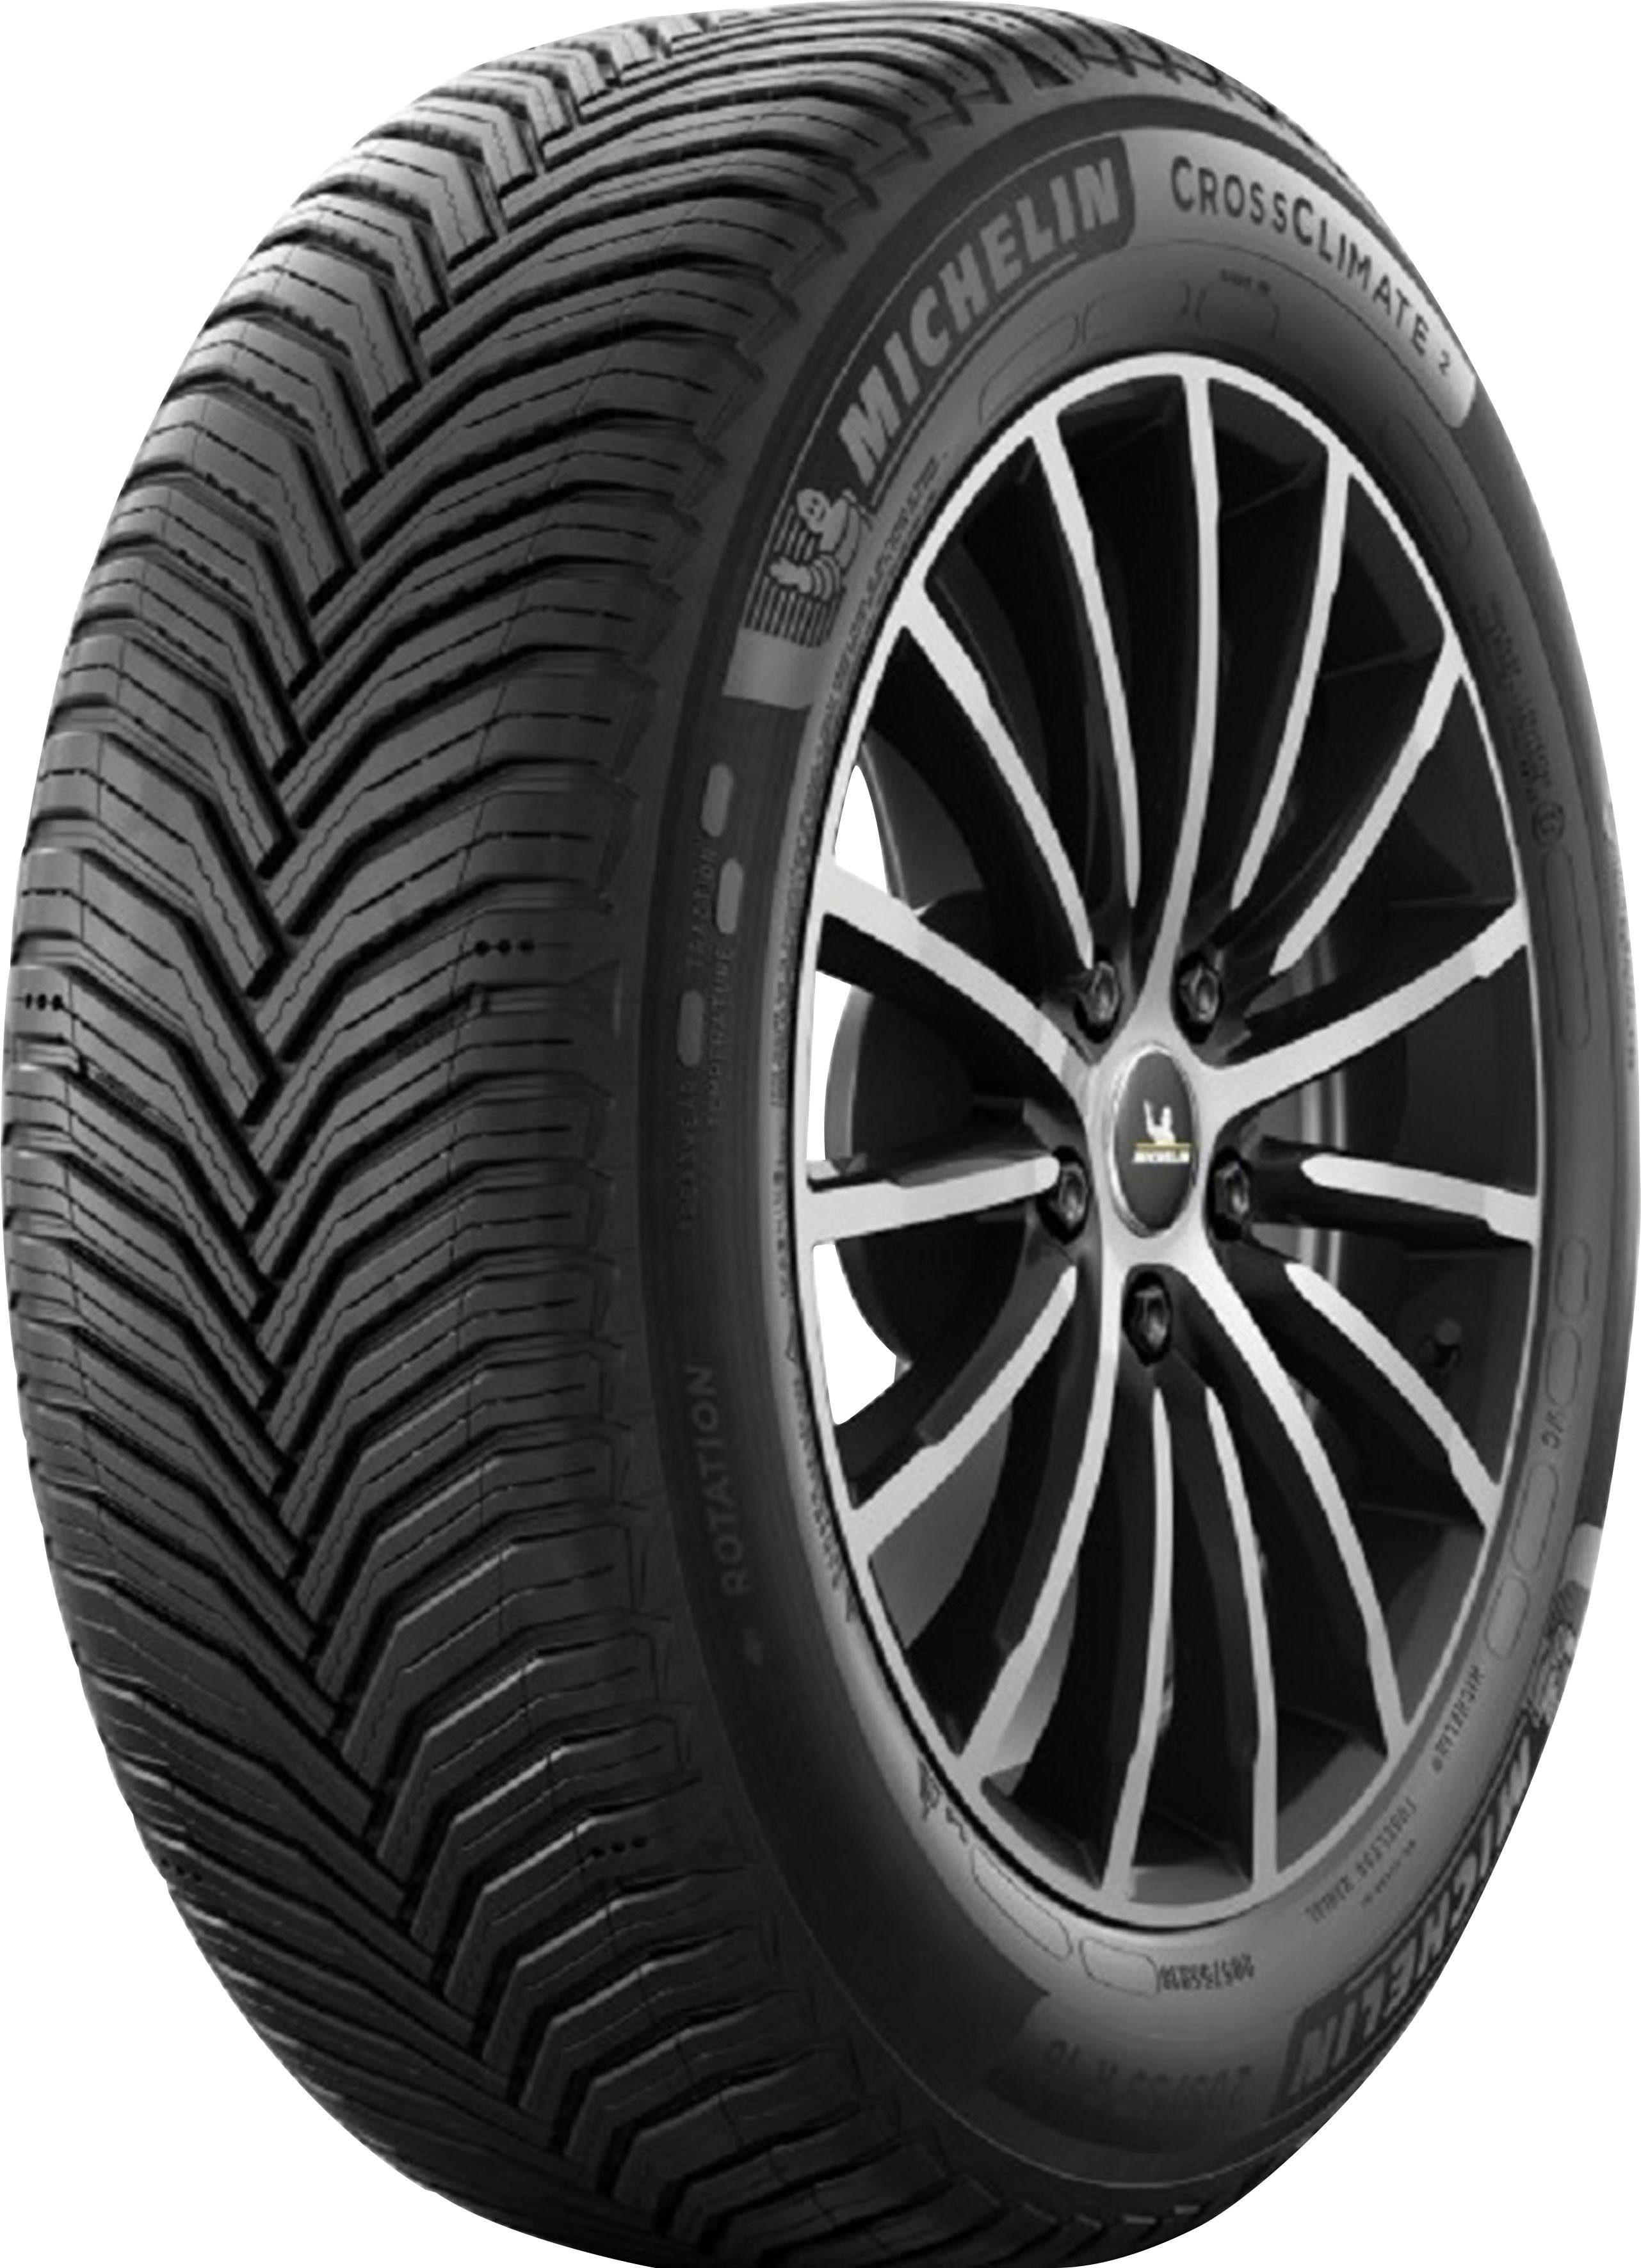 Supergünstig, supergünstiger Preis Reifen 225/65 R16 kaufen OTTO online 